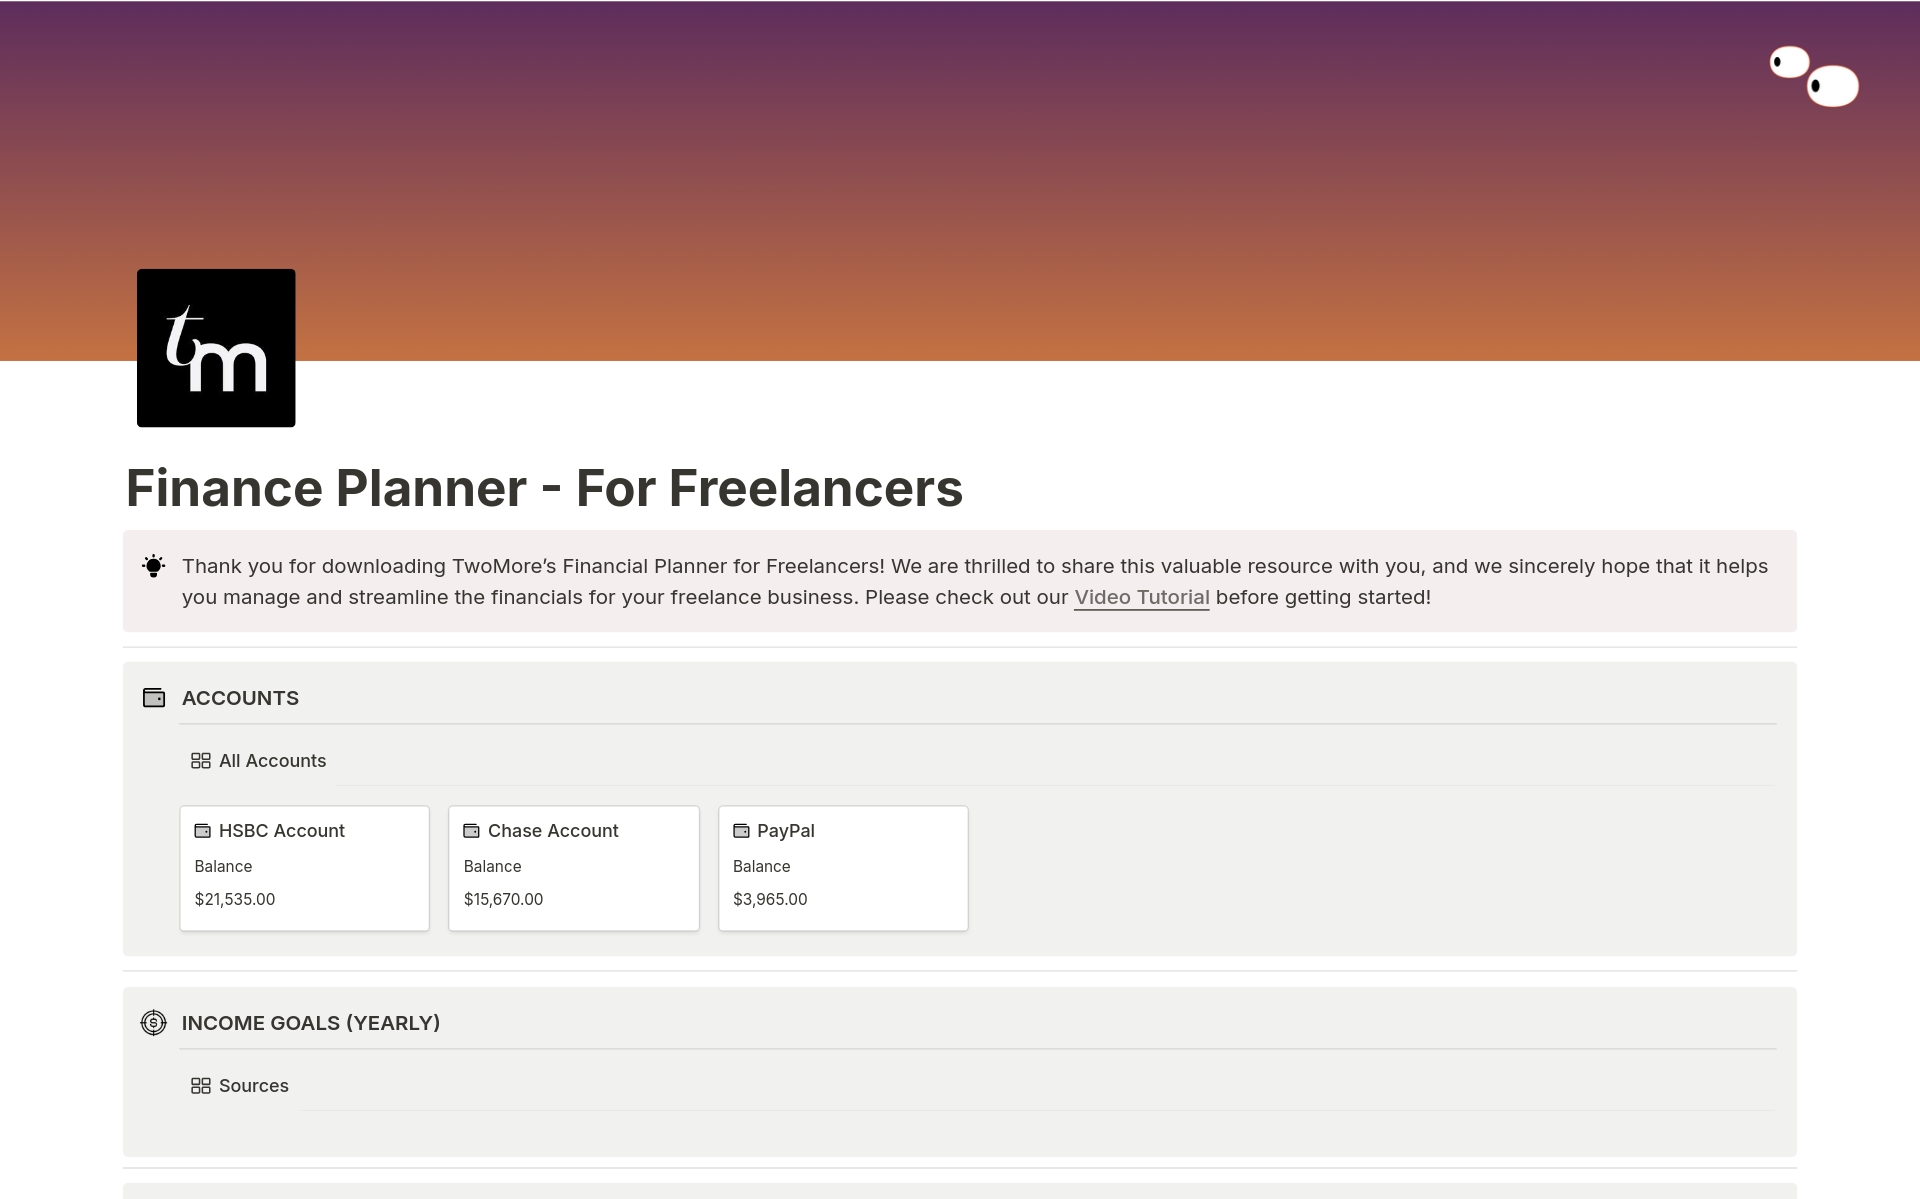 En förhandsgranskning av mallen för Finance Planner - For Freelancers